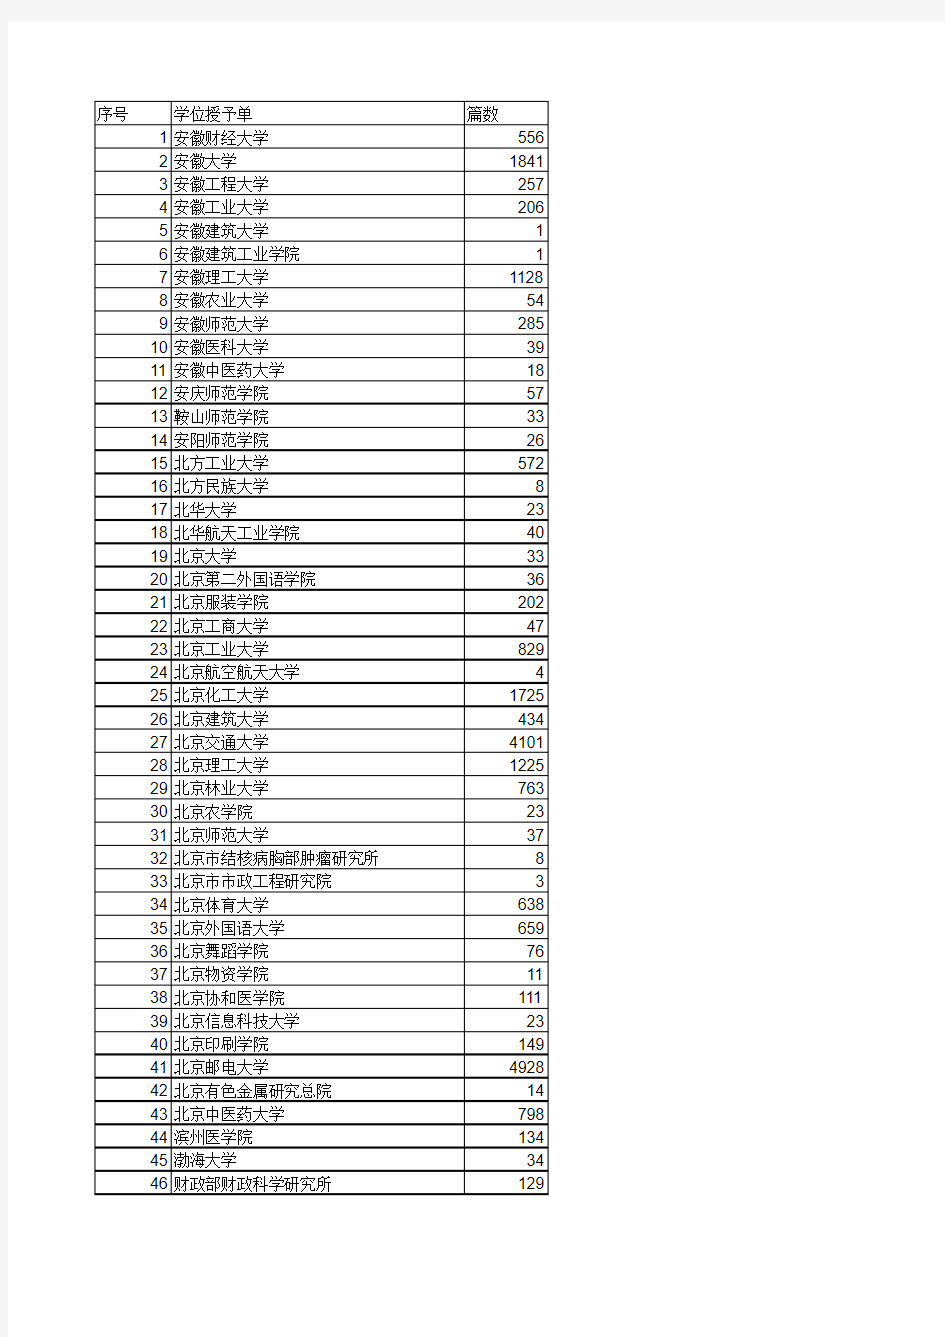 中国学术期刊影响因子年报(2016年)统计源列表